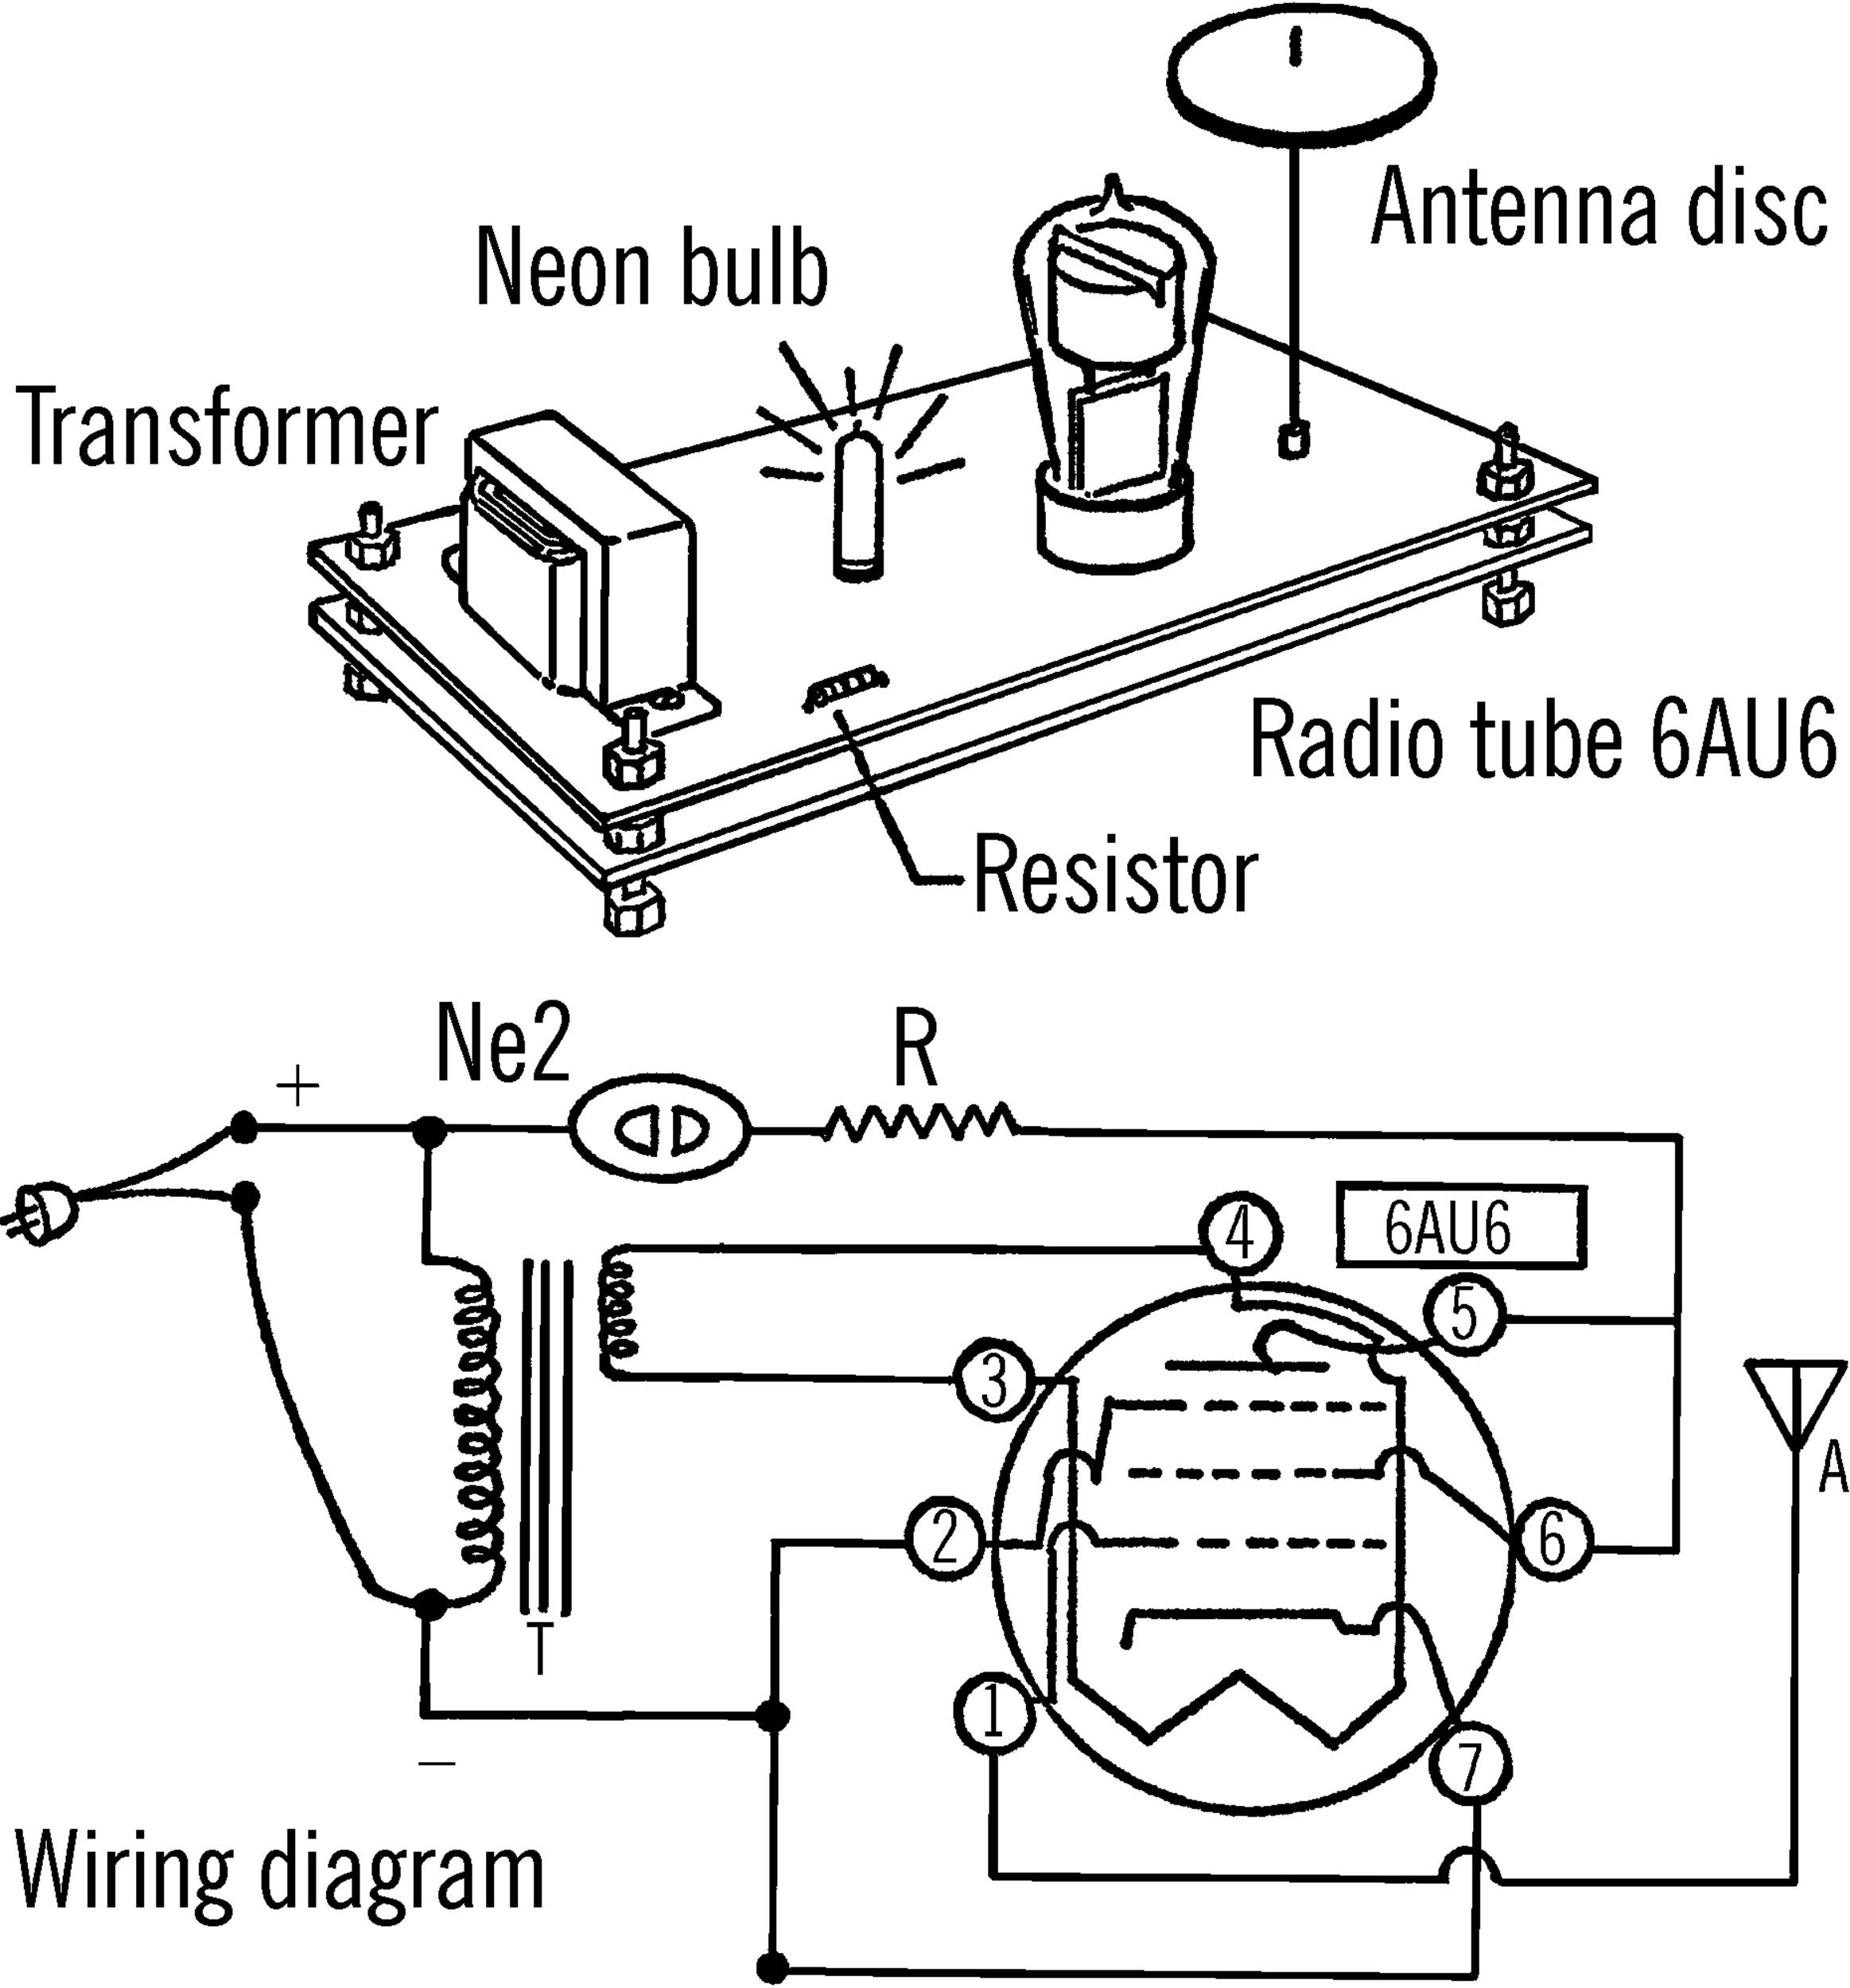 Electronic electroscope.